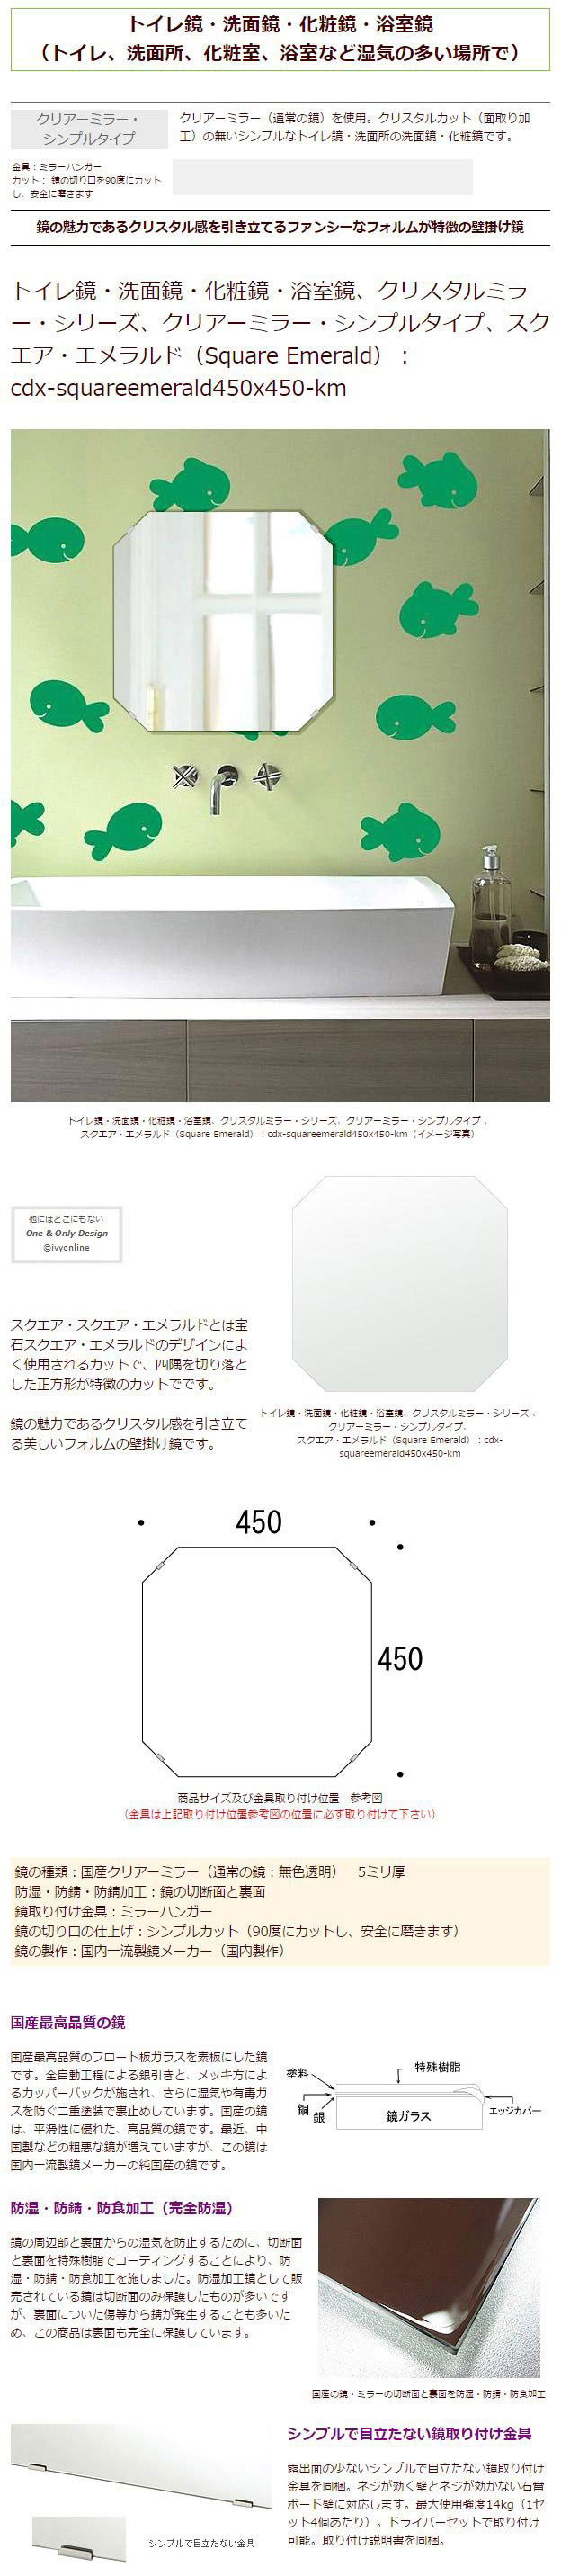 洗面 鏡 ミラー 日本製 正方形 壁掛け鏡 引越し 450x450mm 壁掛け 洗面鏡 取付金具と説明書 5mm厚 洗面所 洗面台 プレゼント シンプル カット